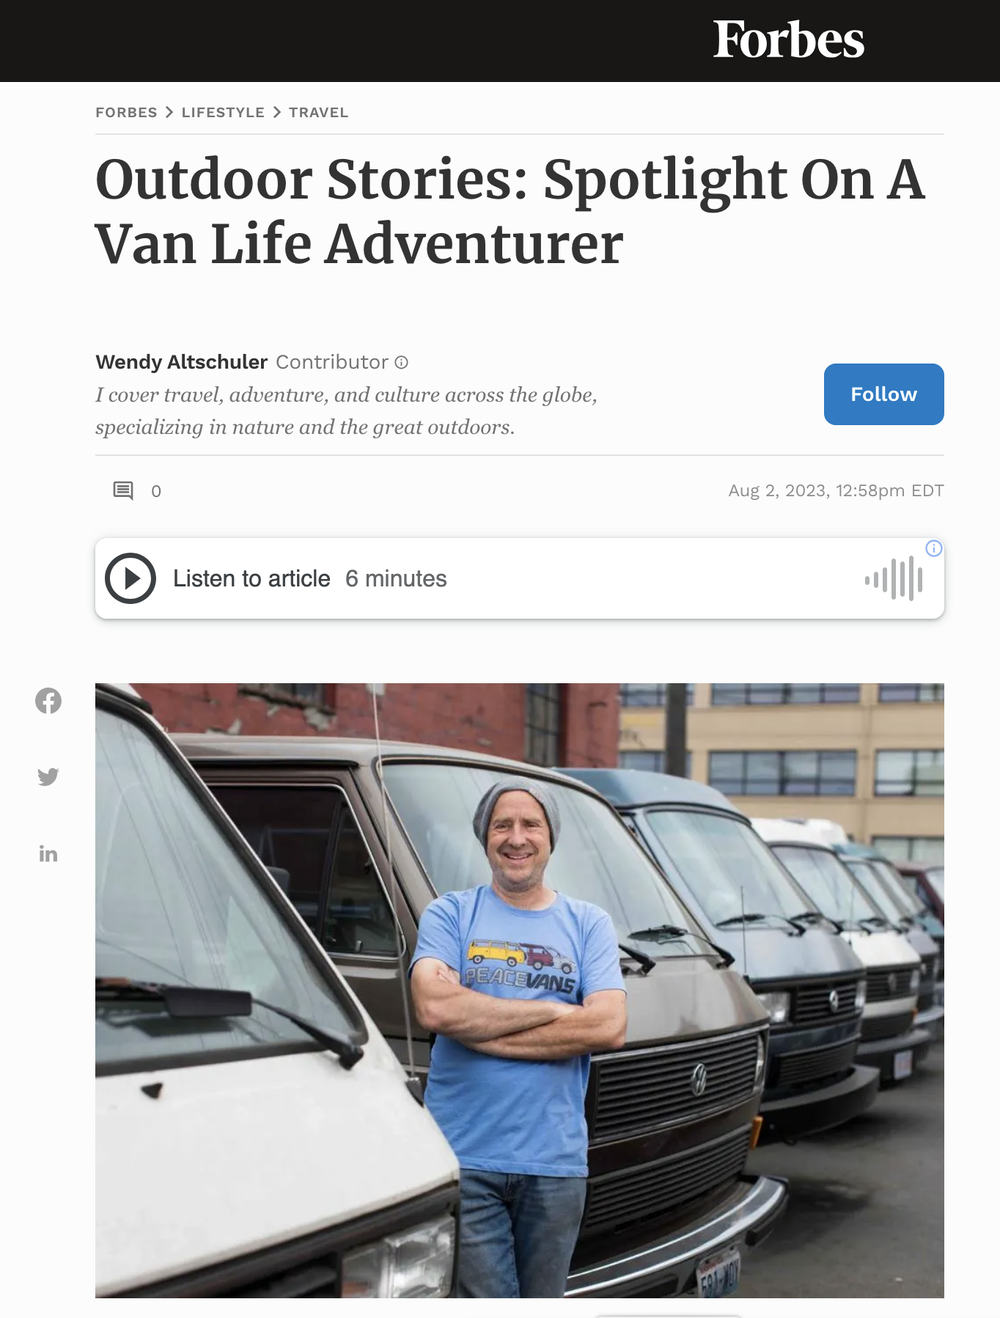 Outdoor Stories: Spotlight On A Van Life Adventurer